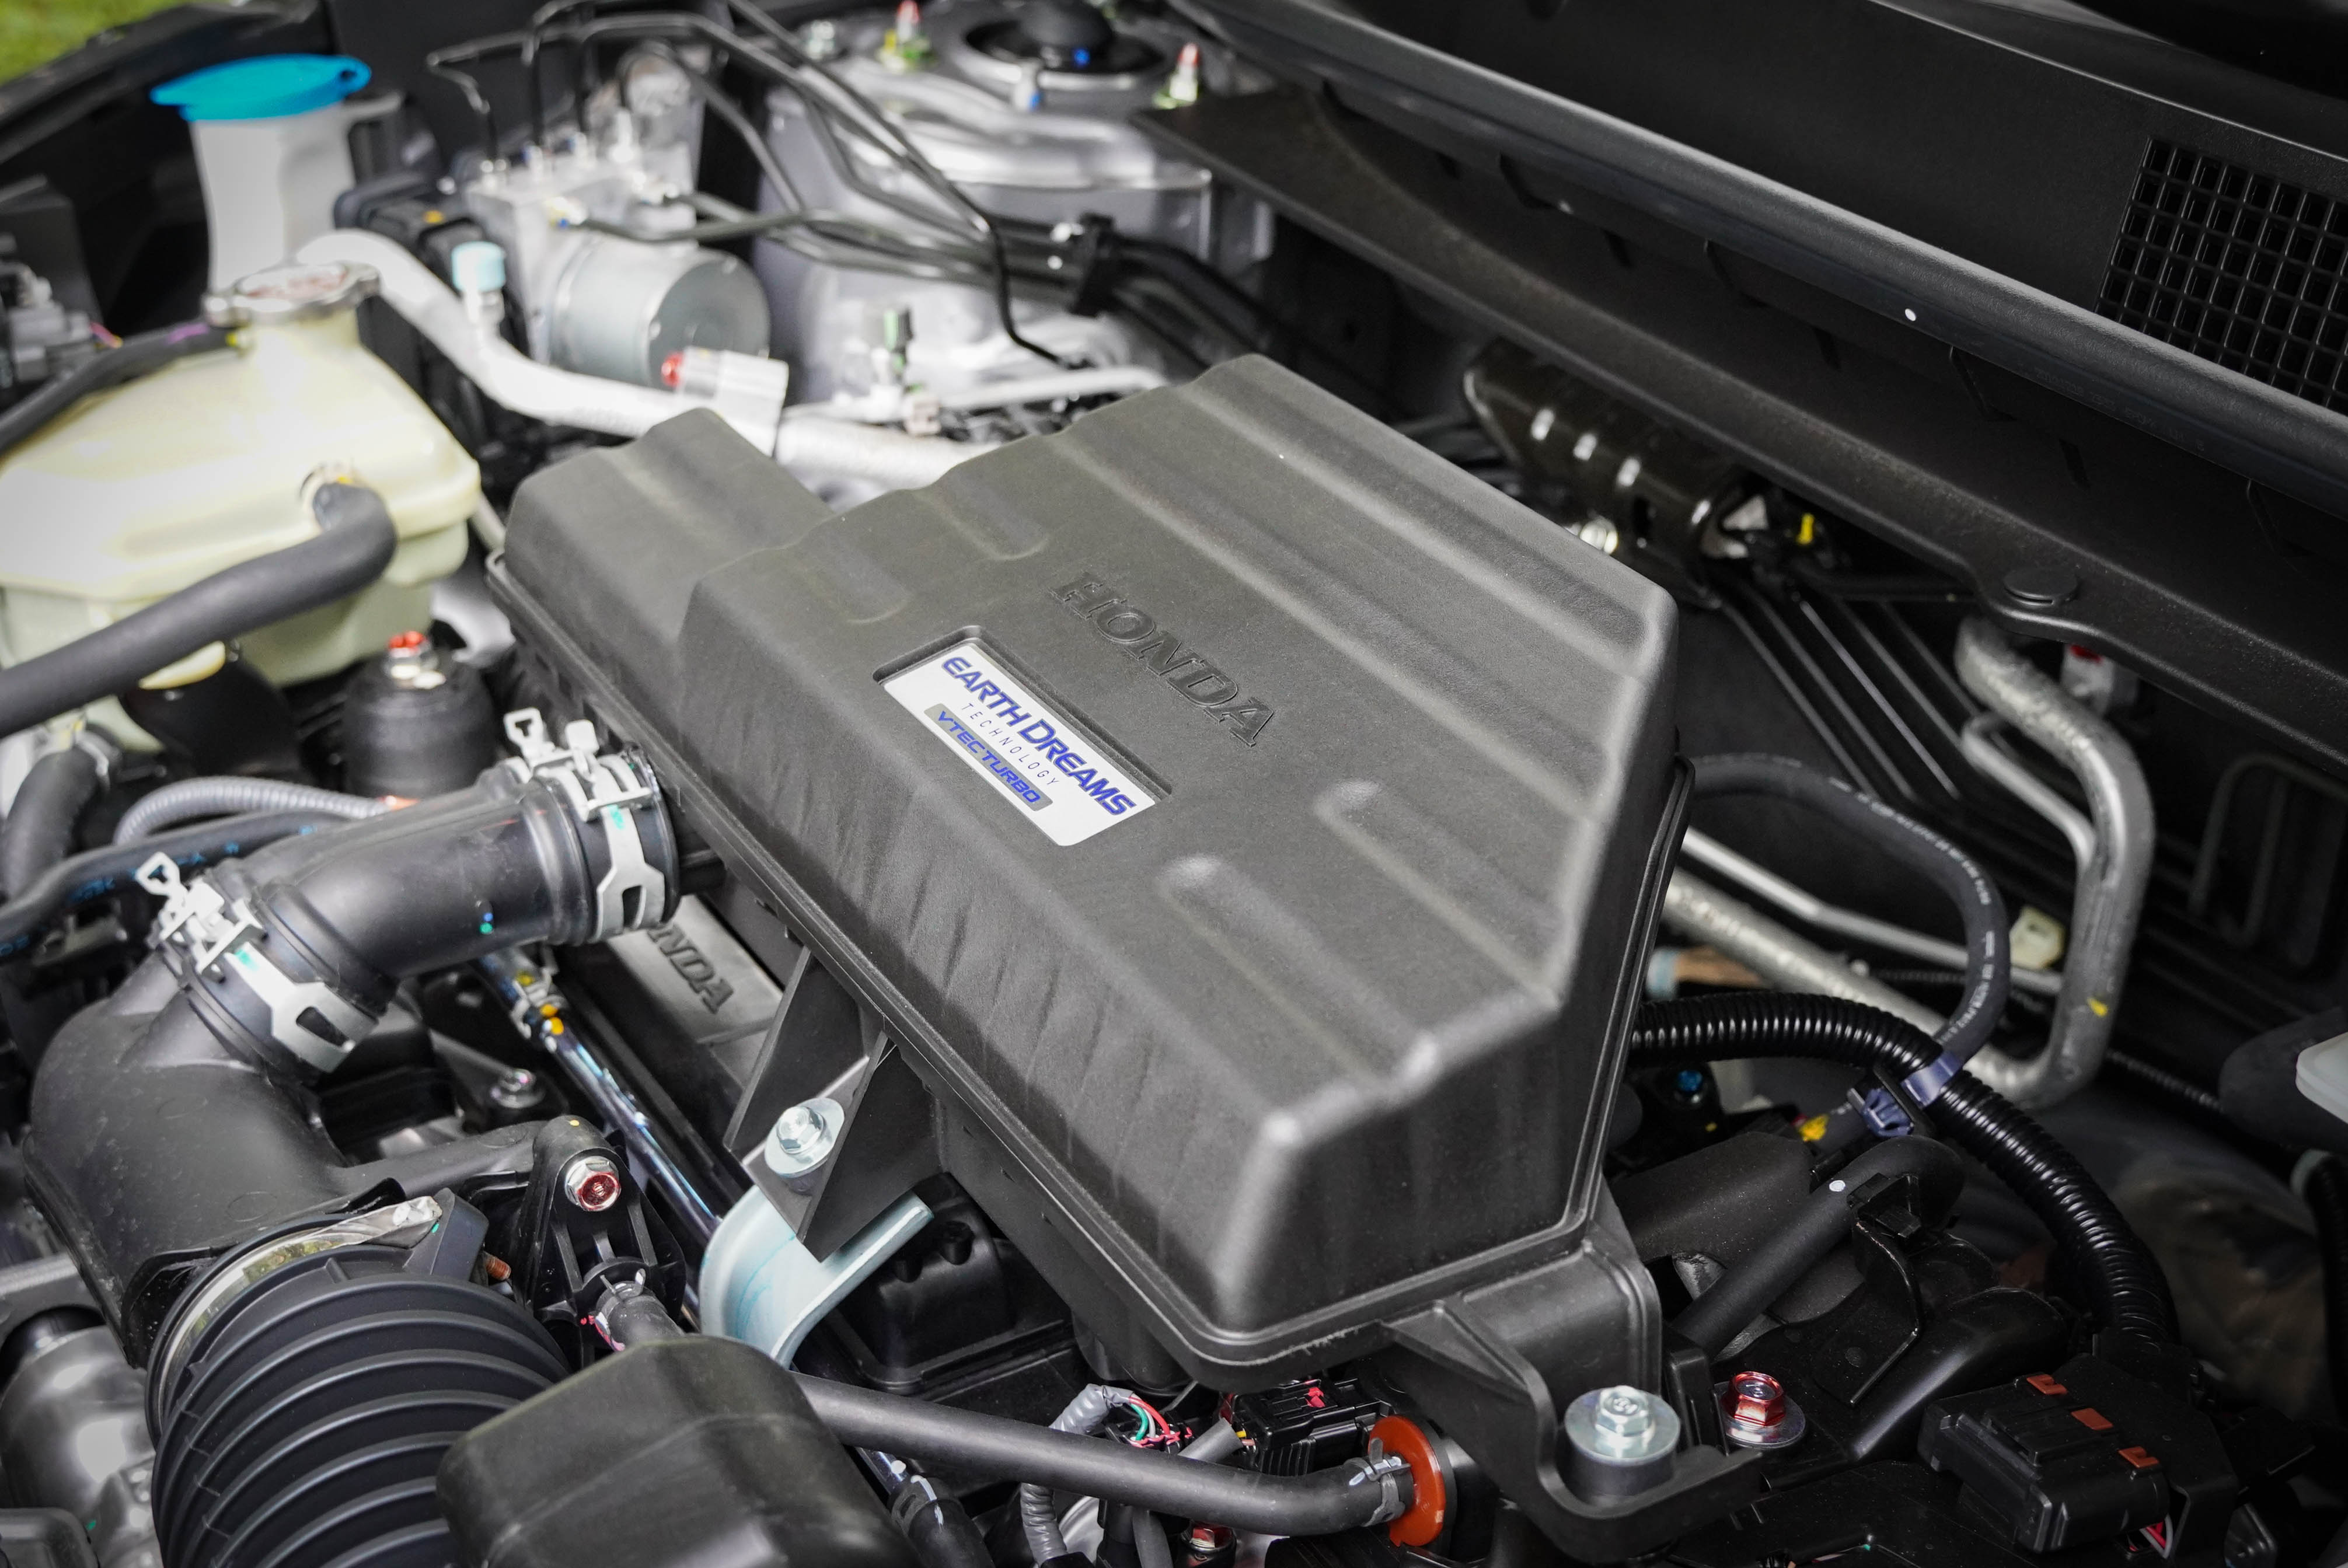 Earth Dreams VTEC Turbo 引擎輸出為 193 匹馬力、24.8 公斤米扭力。